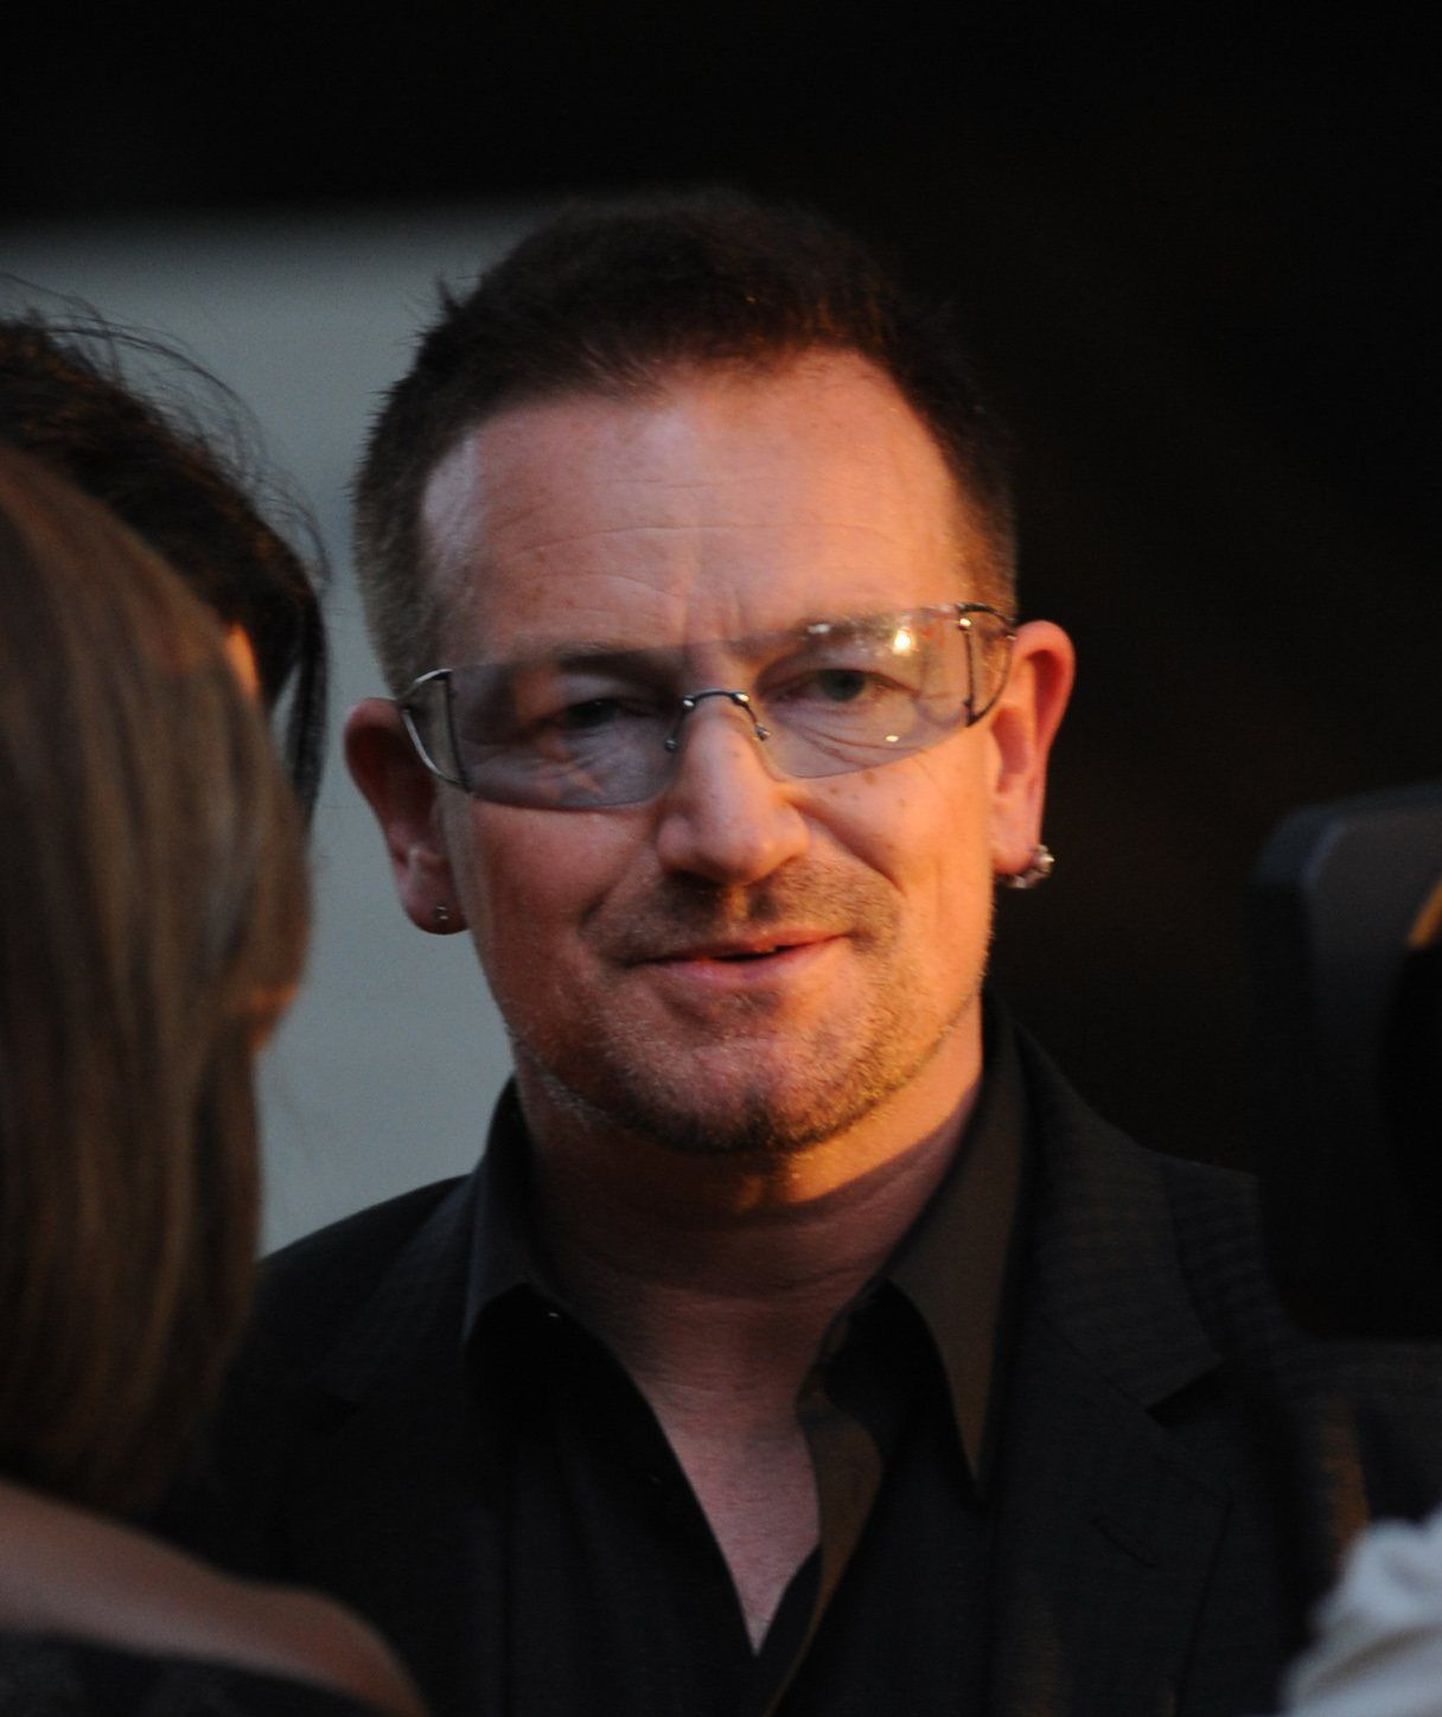 Ansambli U2 solist Bono